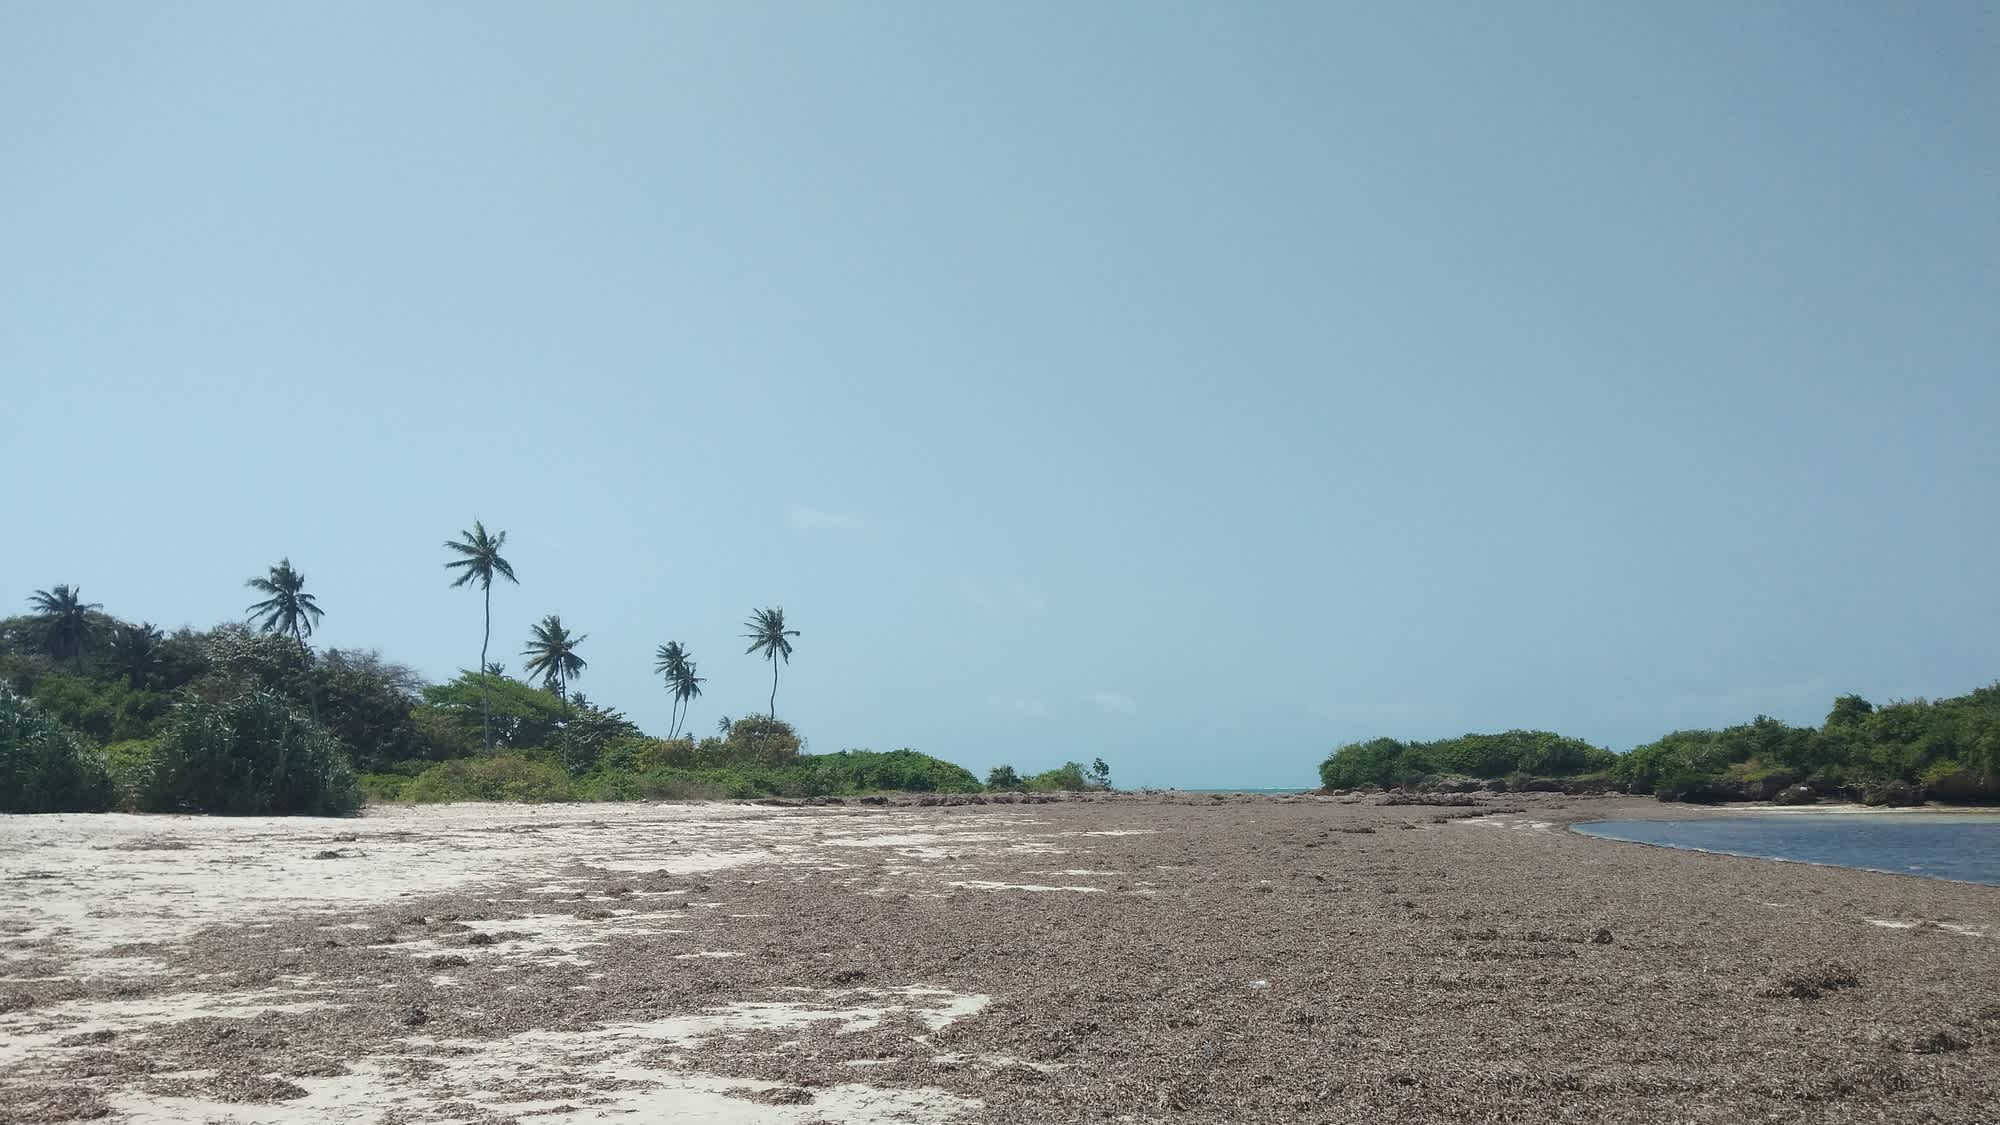 Blick bei Ebbe auf den Sandstrand Msambweni Beach in Kenia, bei blauem Himmel und mit Palmen sowie natürlicher Vegetation am Strandrand.